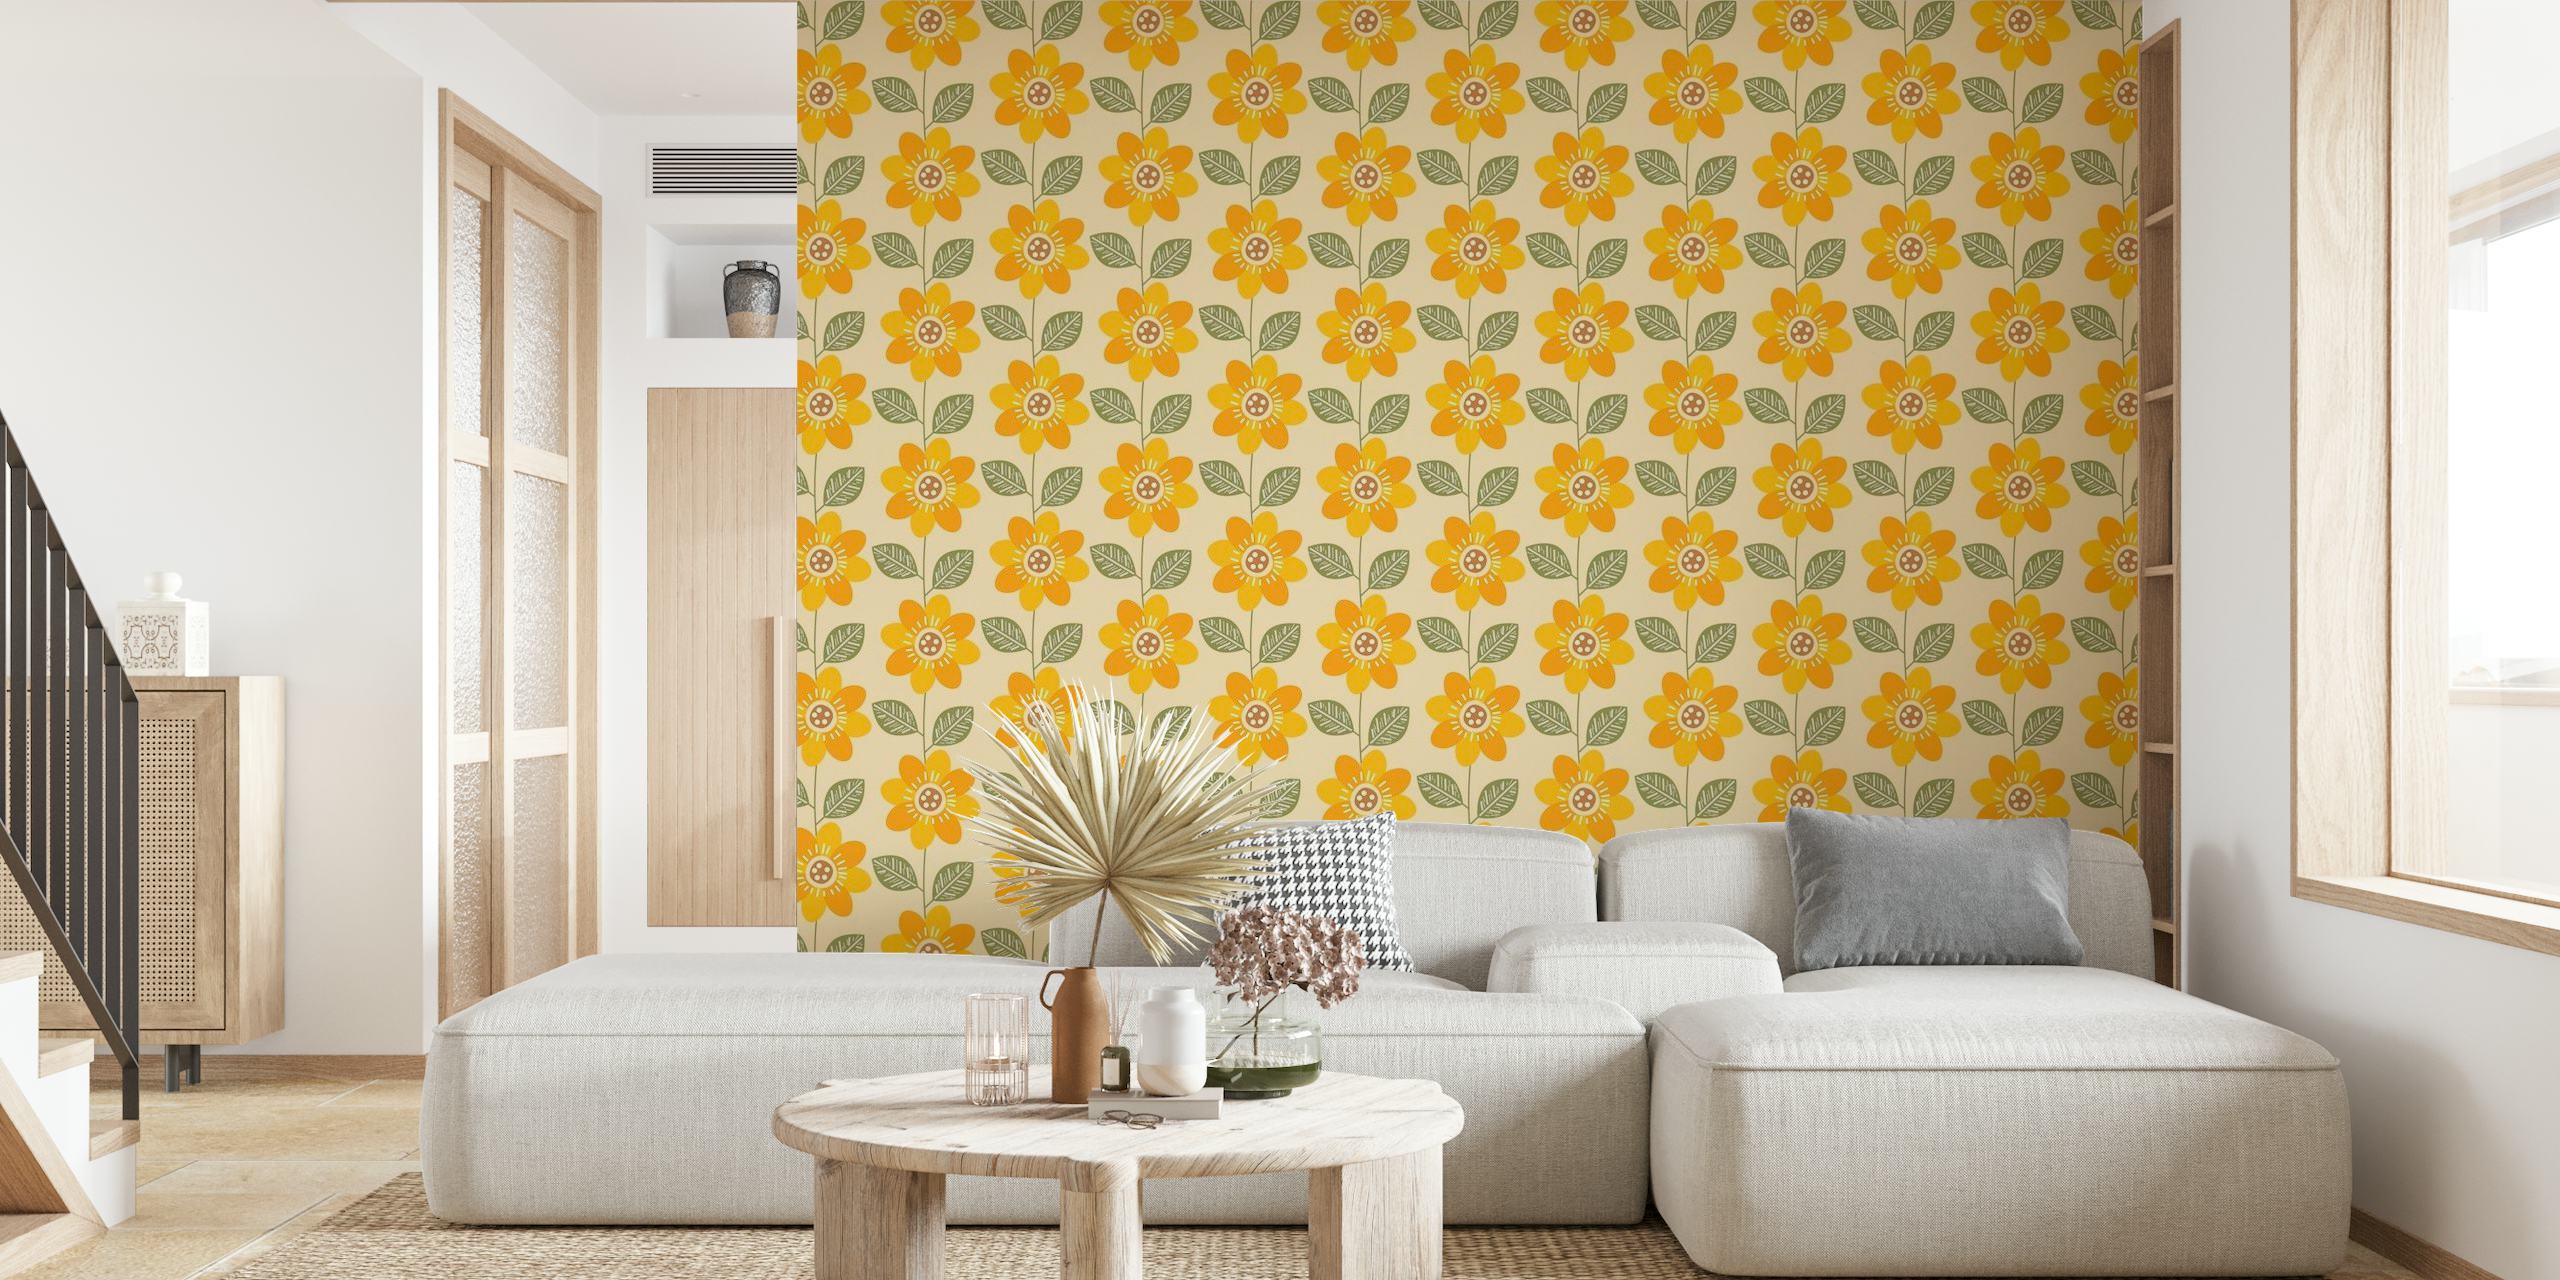 Zonnebloempatroon muurschildering met felgele bloemen en groene accenten op een neutrale achtergrond